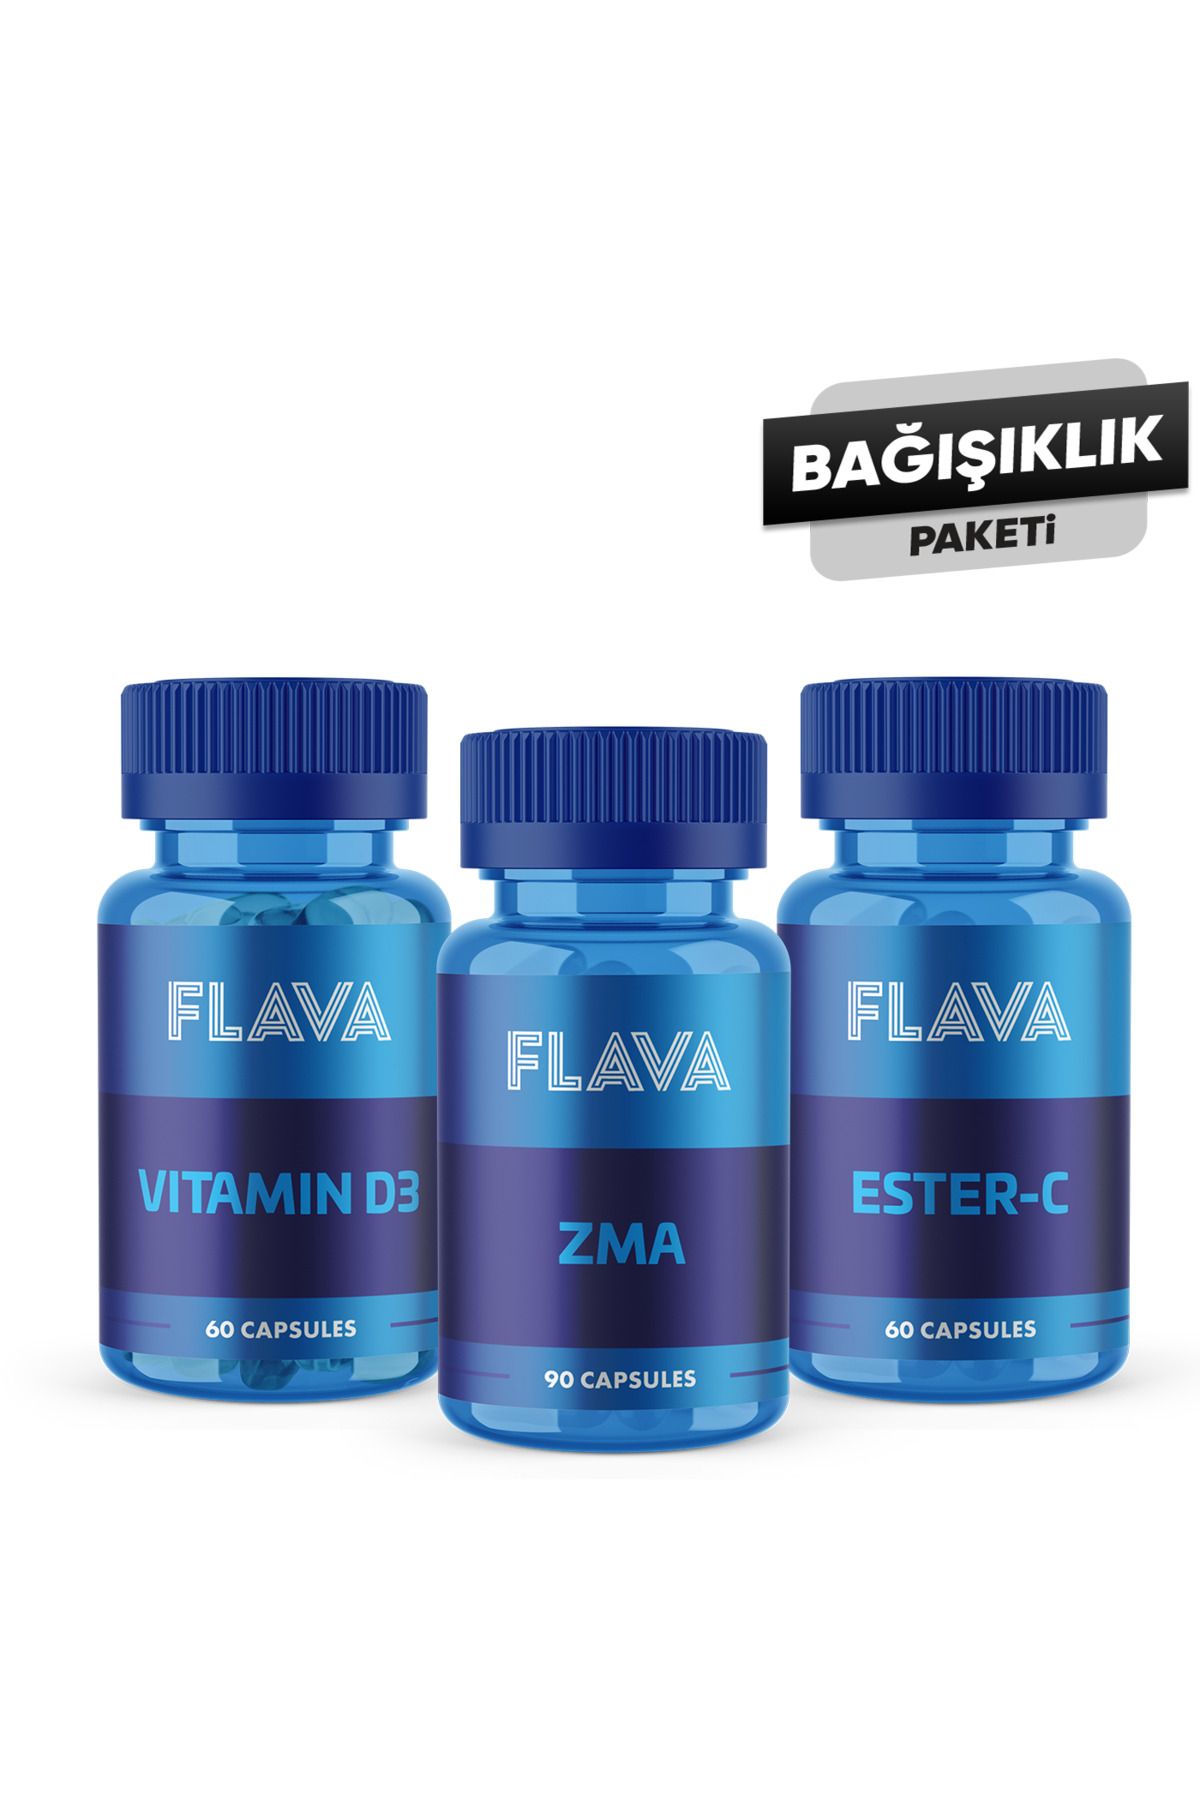 FLAVA Bağışıklık Paketi